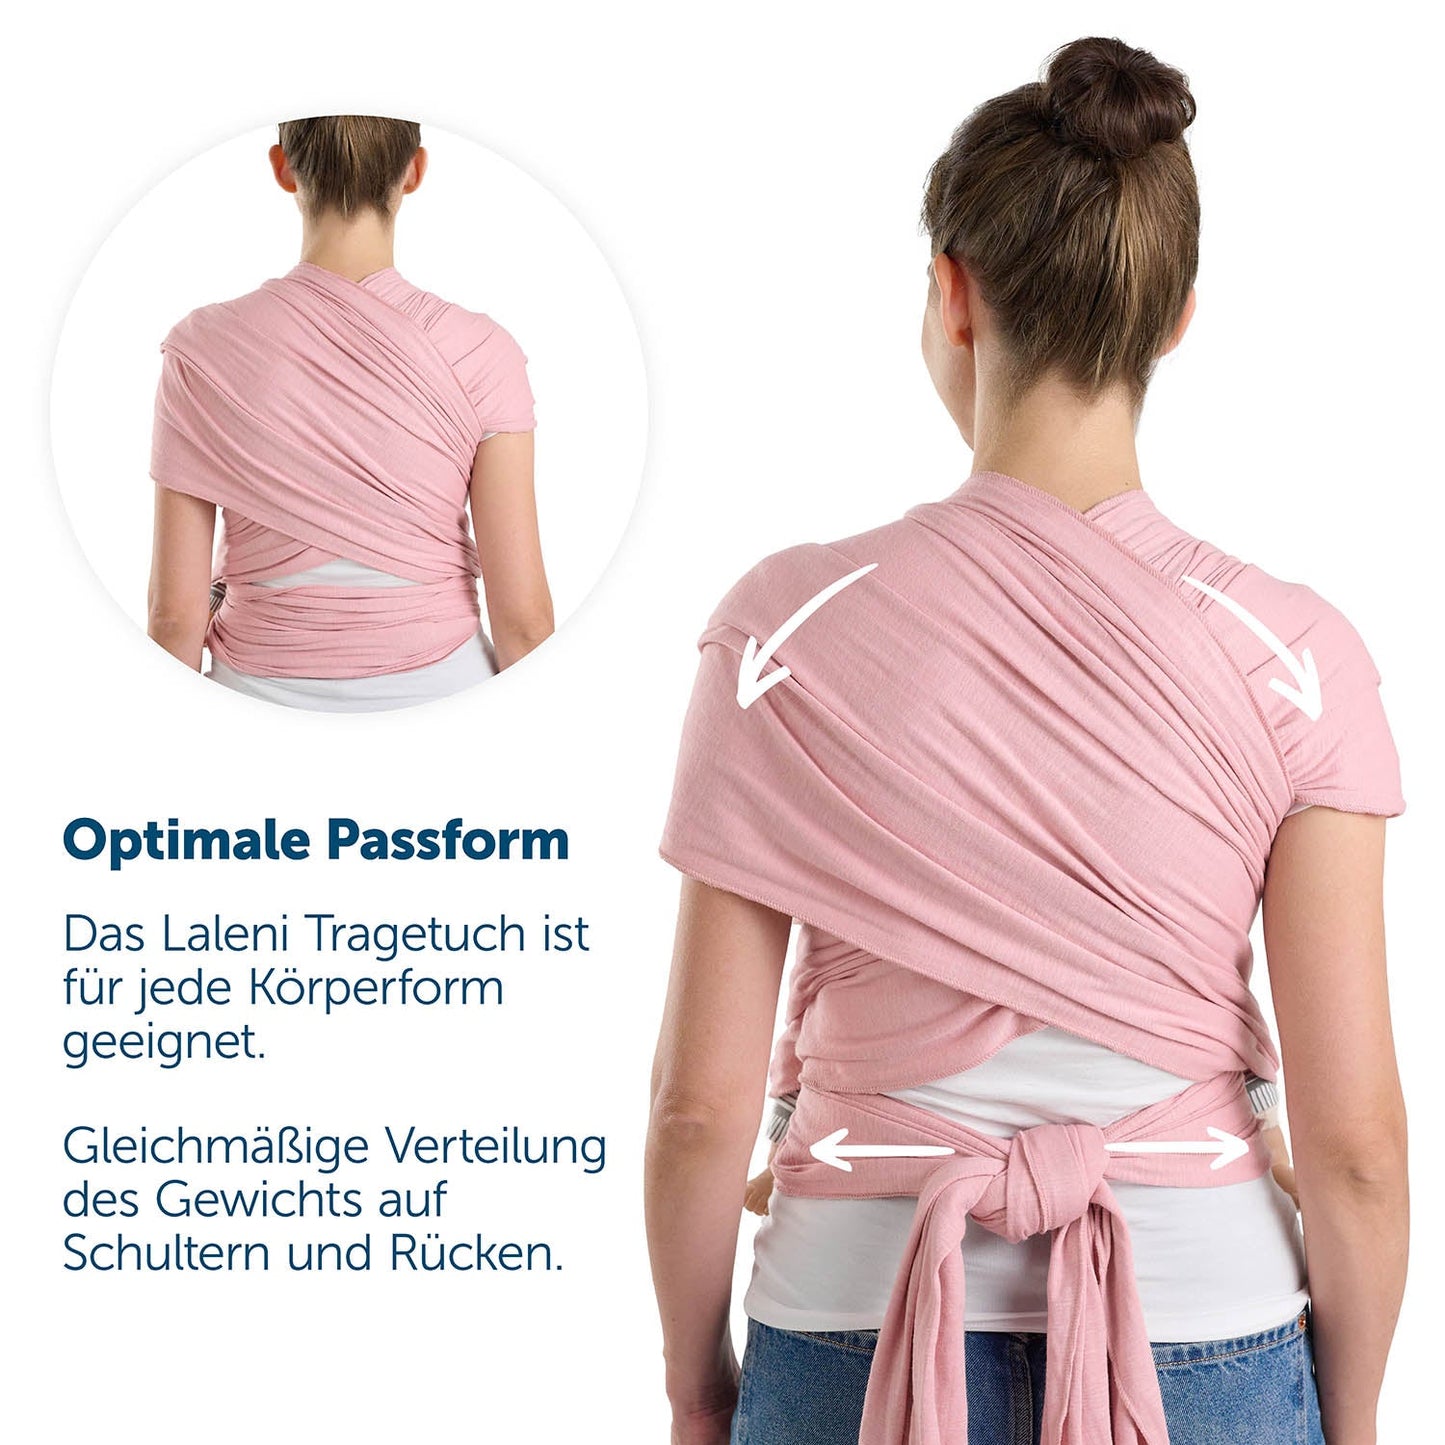 Rückenansicht einer Frau in grauer Tragetuch mit Hinweisen zur optimalen Passform und Gewichtsverteilung.